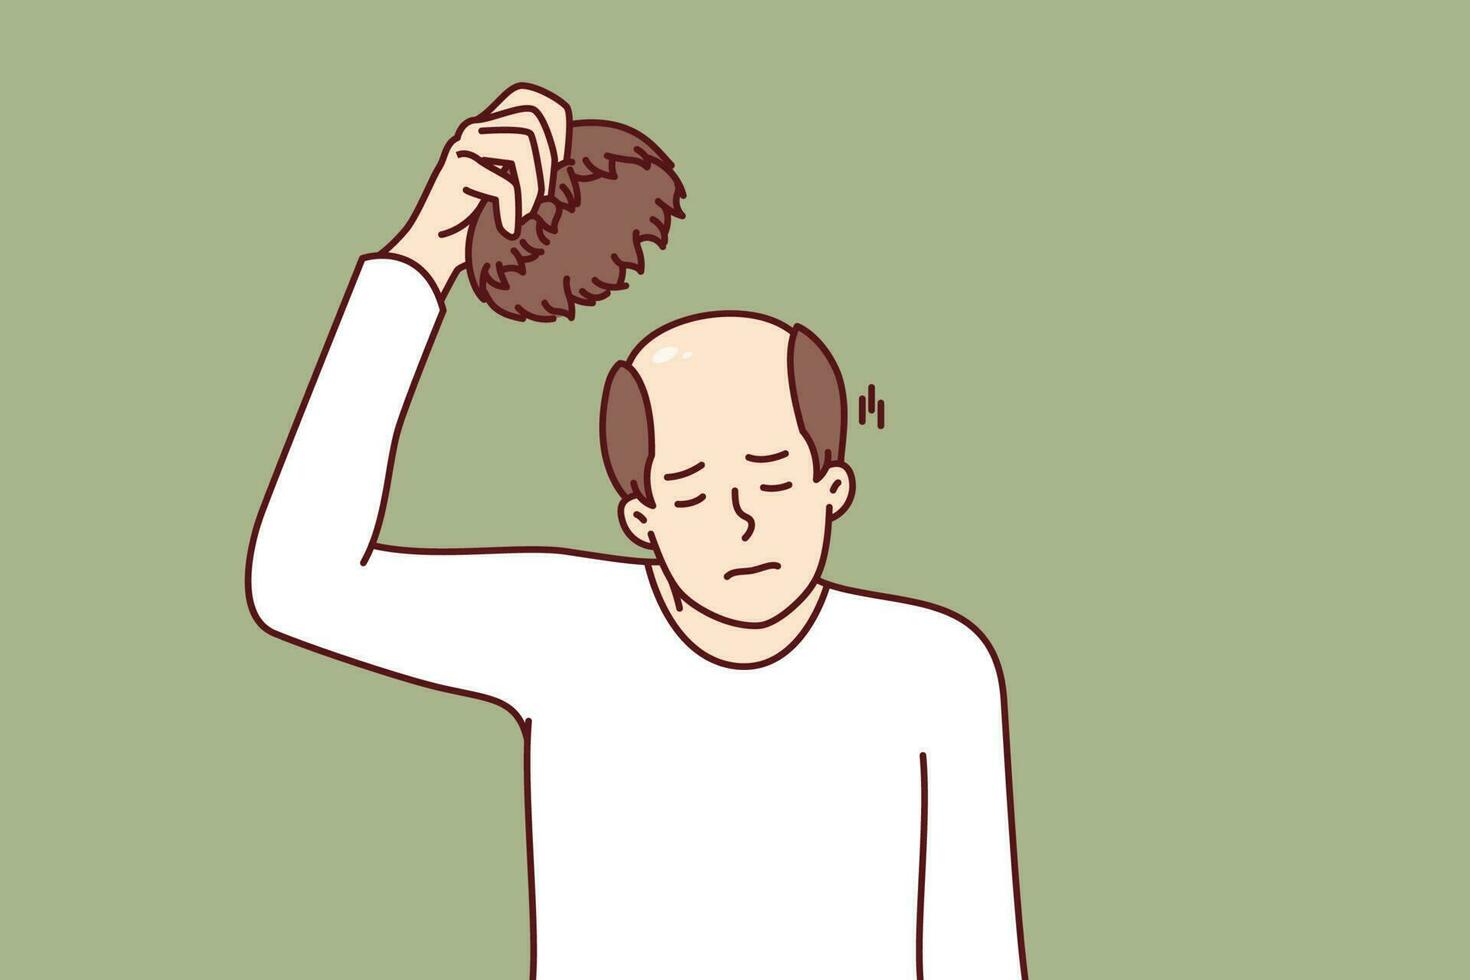 hombre toma apagado peluca y experiencias estrés de calvicie causado por salud problemas o envejecimiento. infeliz adulto humano con peluca en mano necesidades pelo trasplante operación o fármaco a restaurar cabello. vector